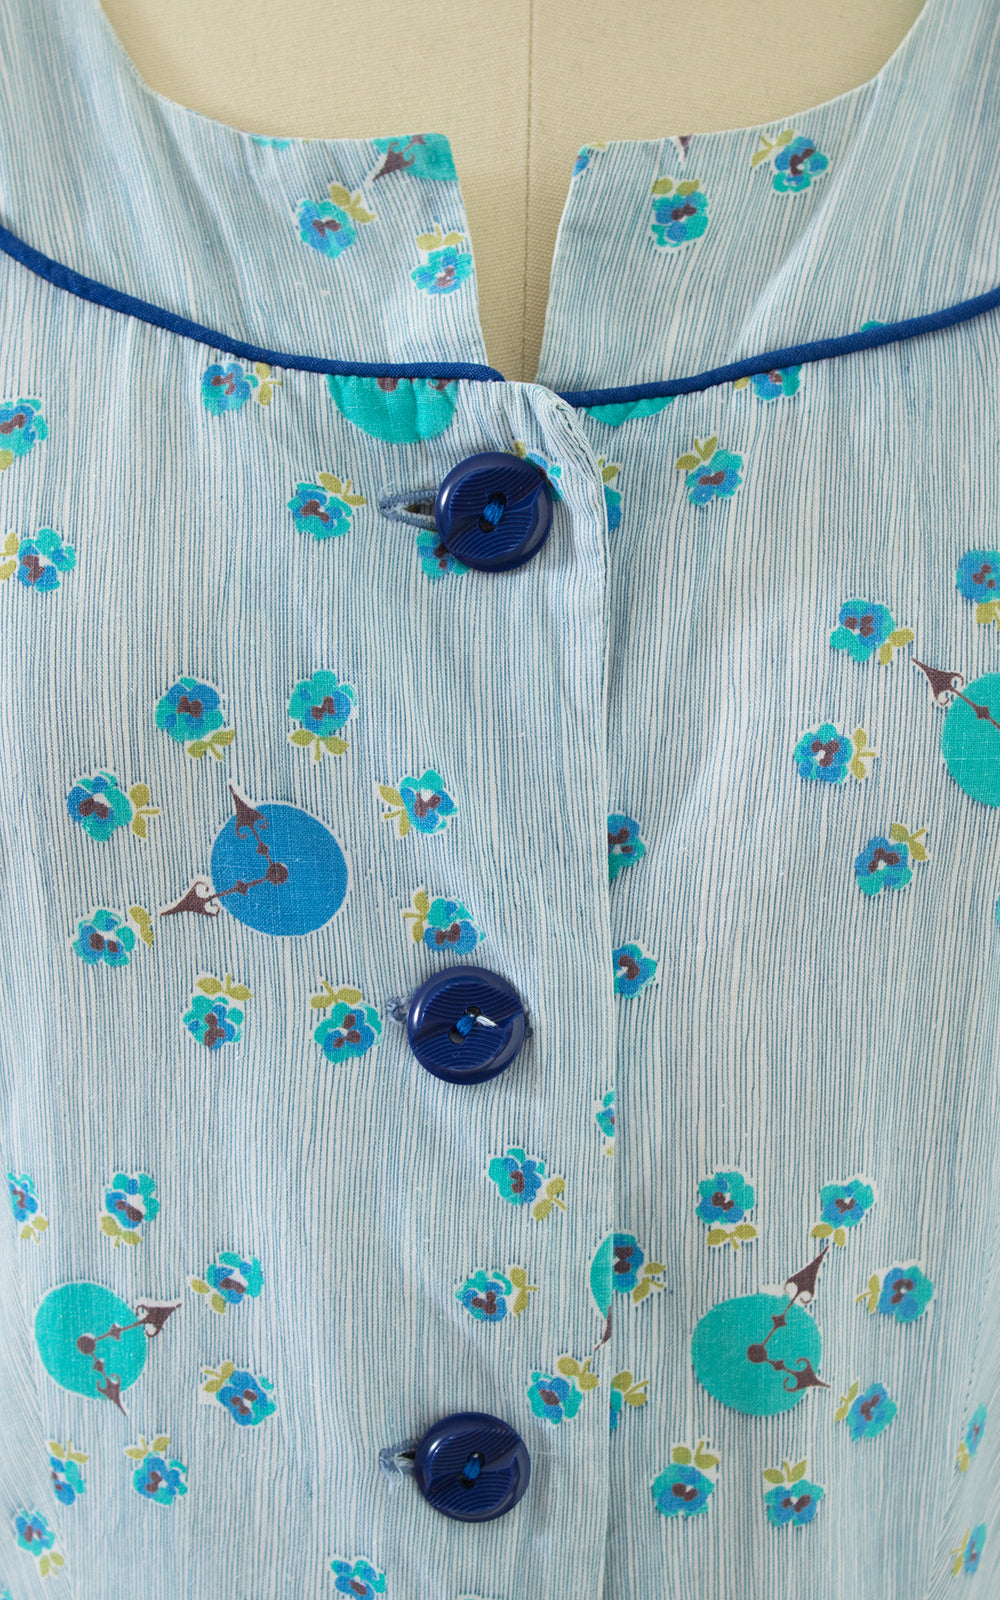 $65 DRESS SALE /// 1940s Clocks Novelty Print Shirtwaist Dress | small